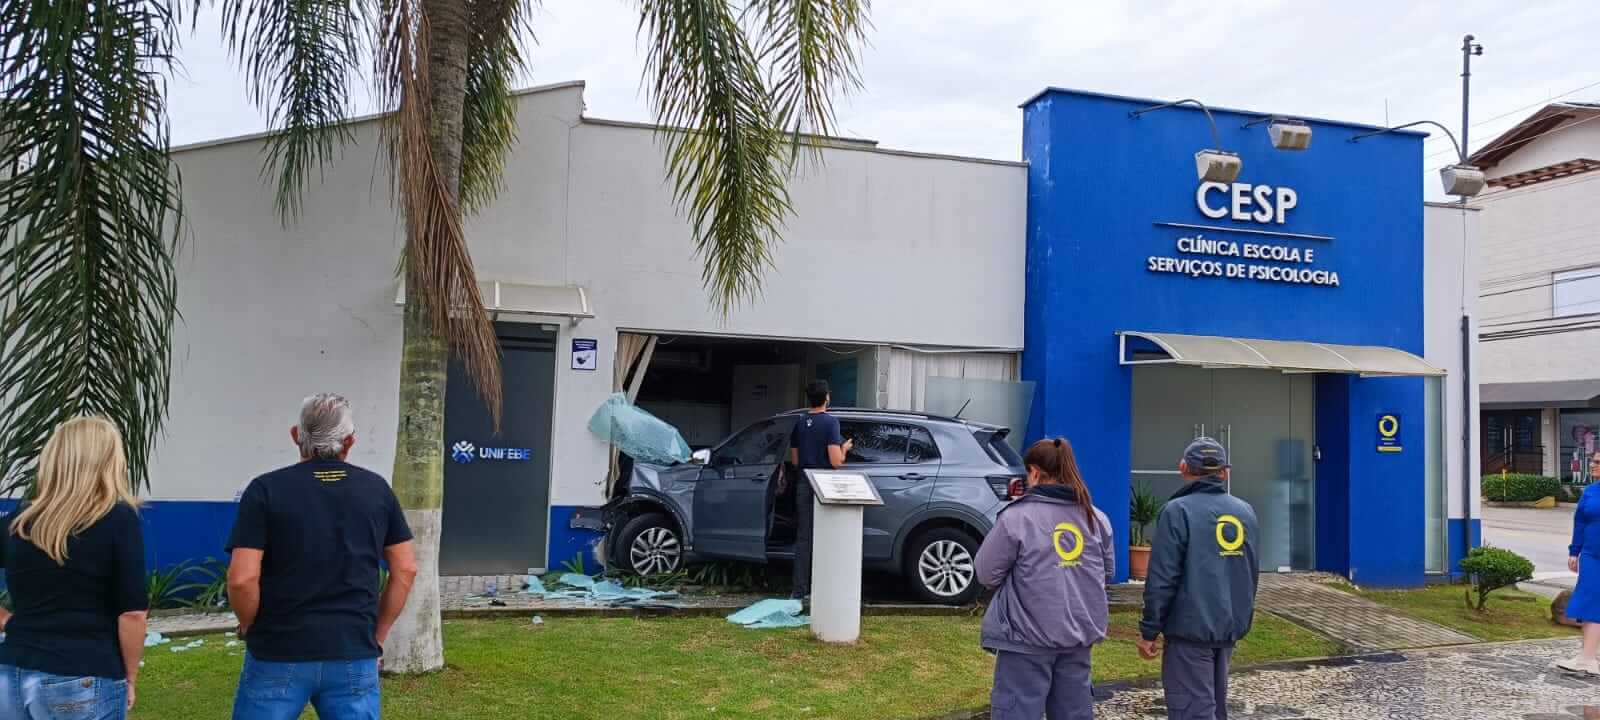 UNIFEBE avalia danos gerados por acidente de trânsito no Cesp